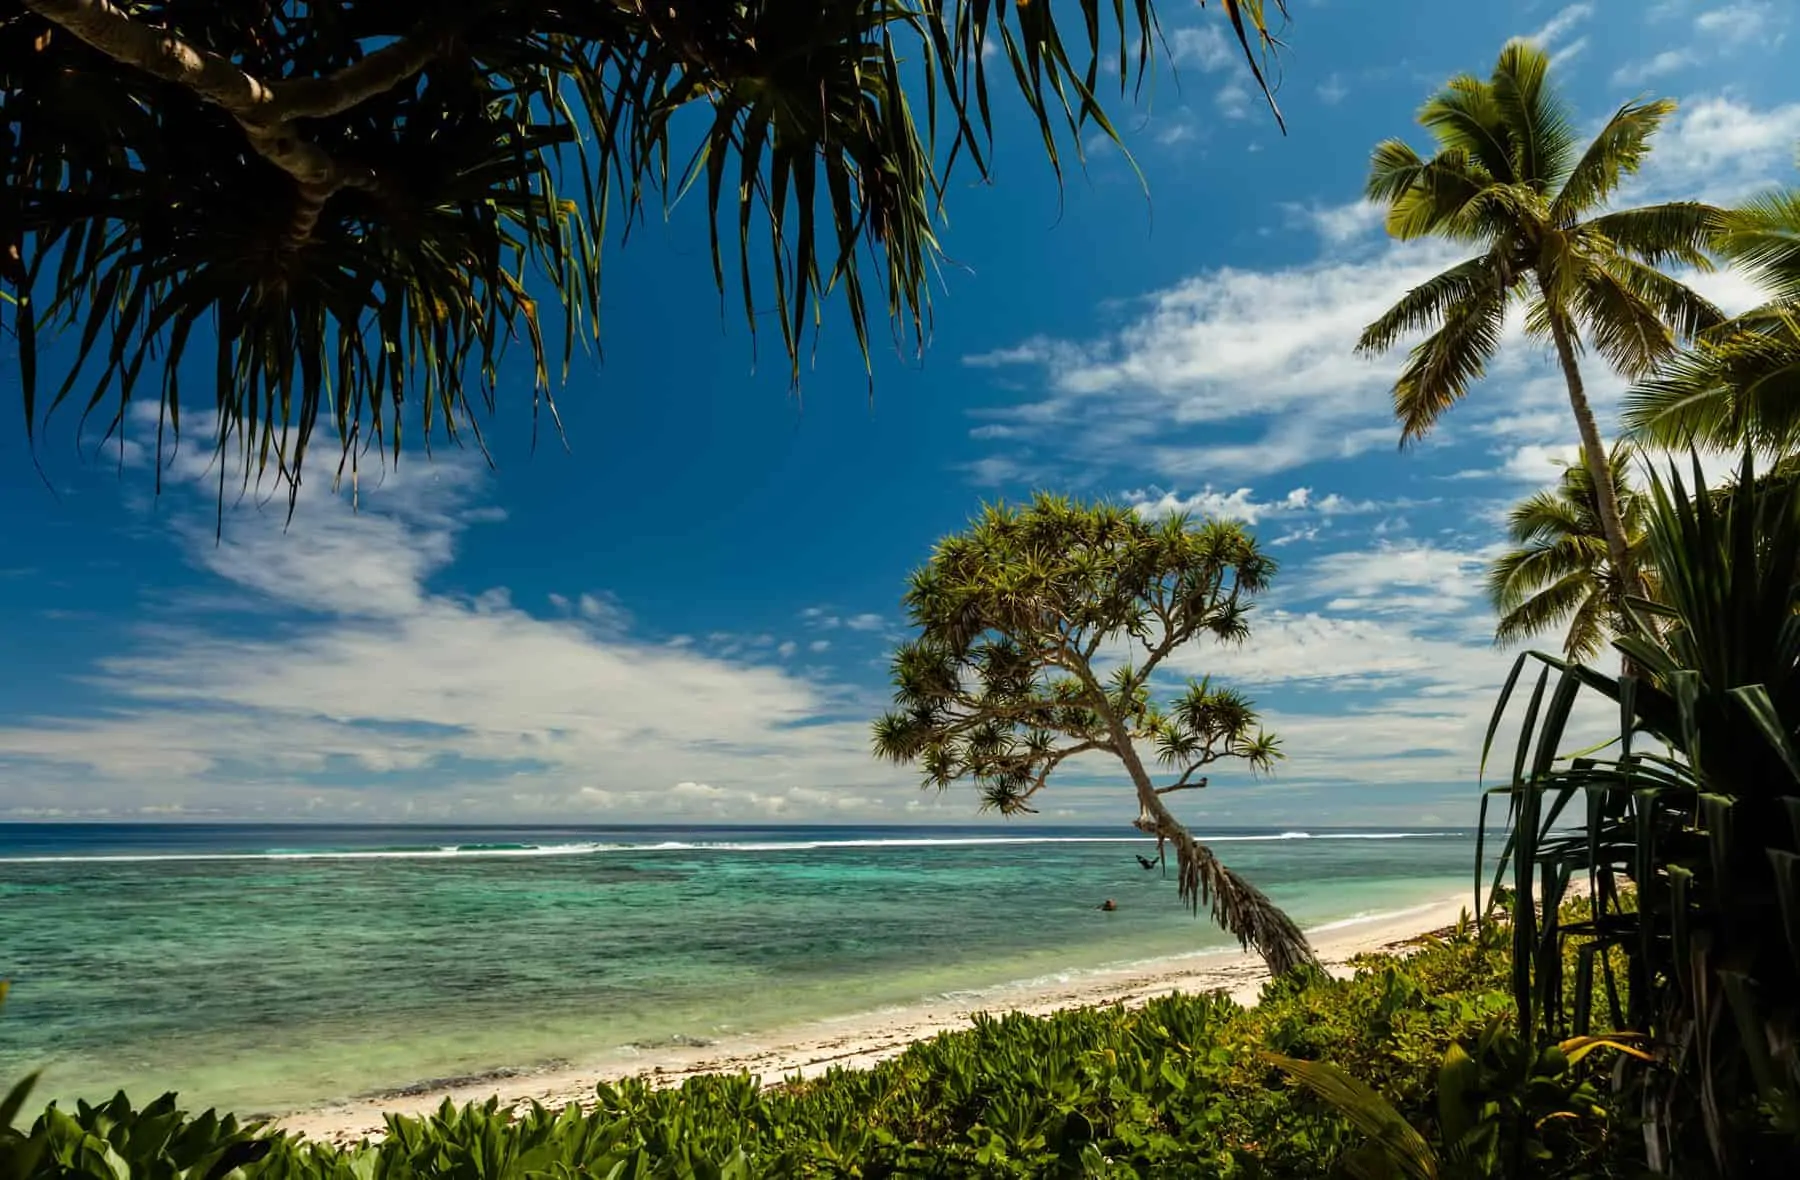 Rejsemål i Stillehavet Tonga en stor øgruppe og skønhed